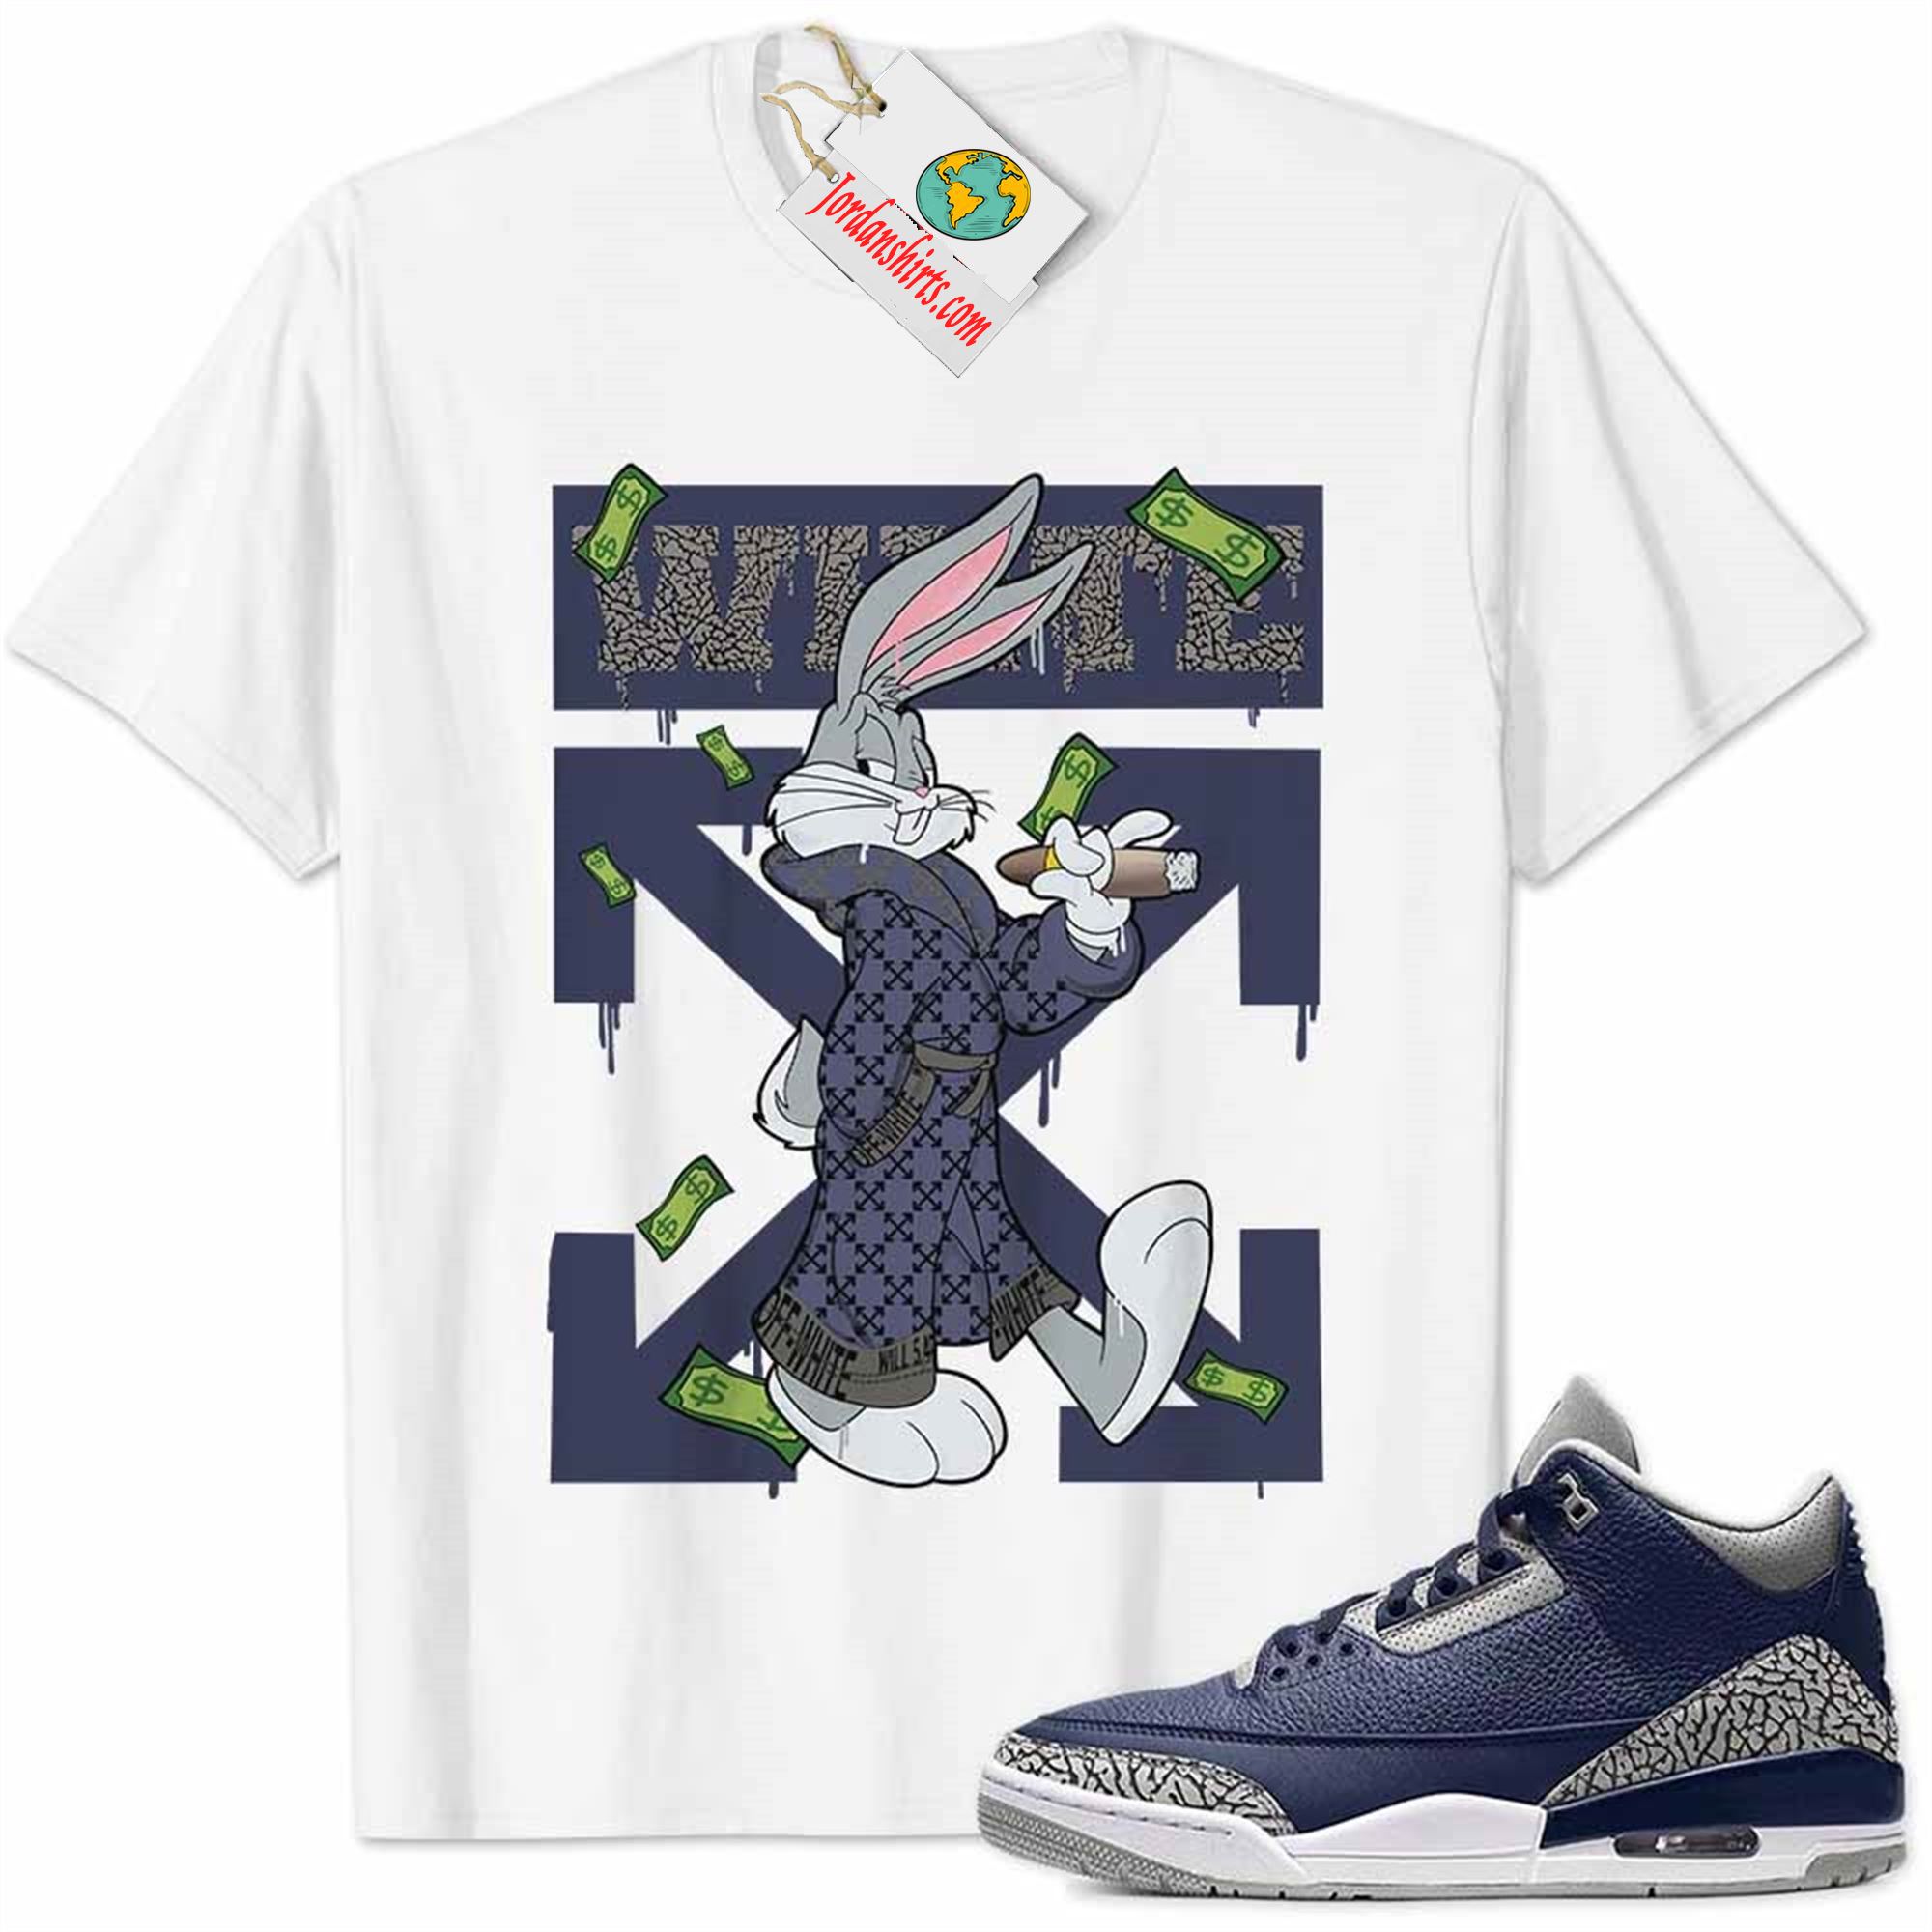 Jordan 3 Shirt, Jordan 3 Georgetown Midnight Navy Shirt Bug Bunny Smokes Weed Money Falling White Plus Size Up To 5xl